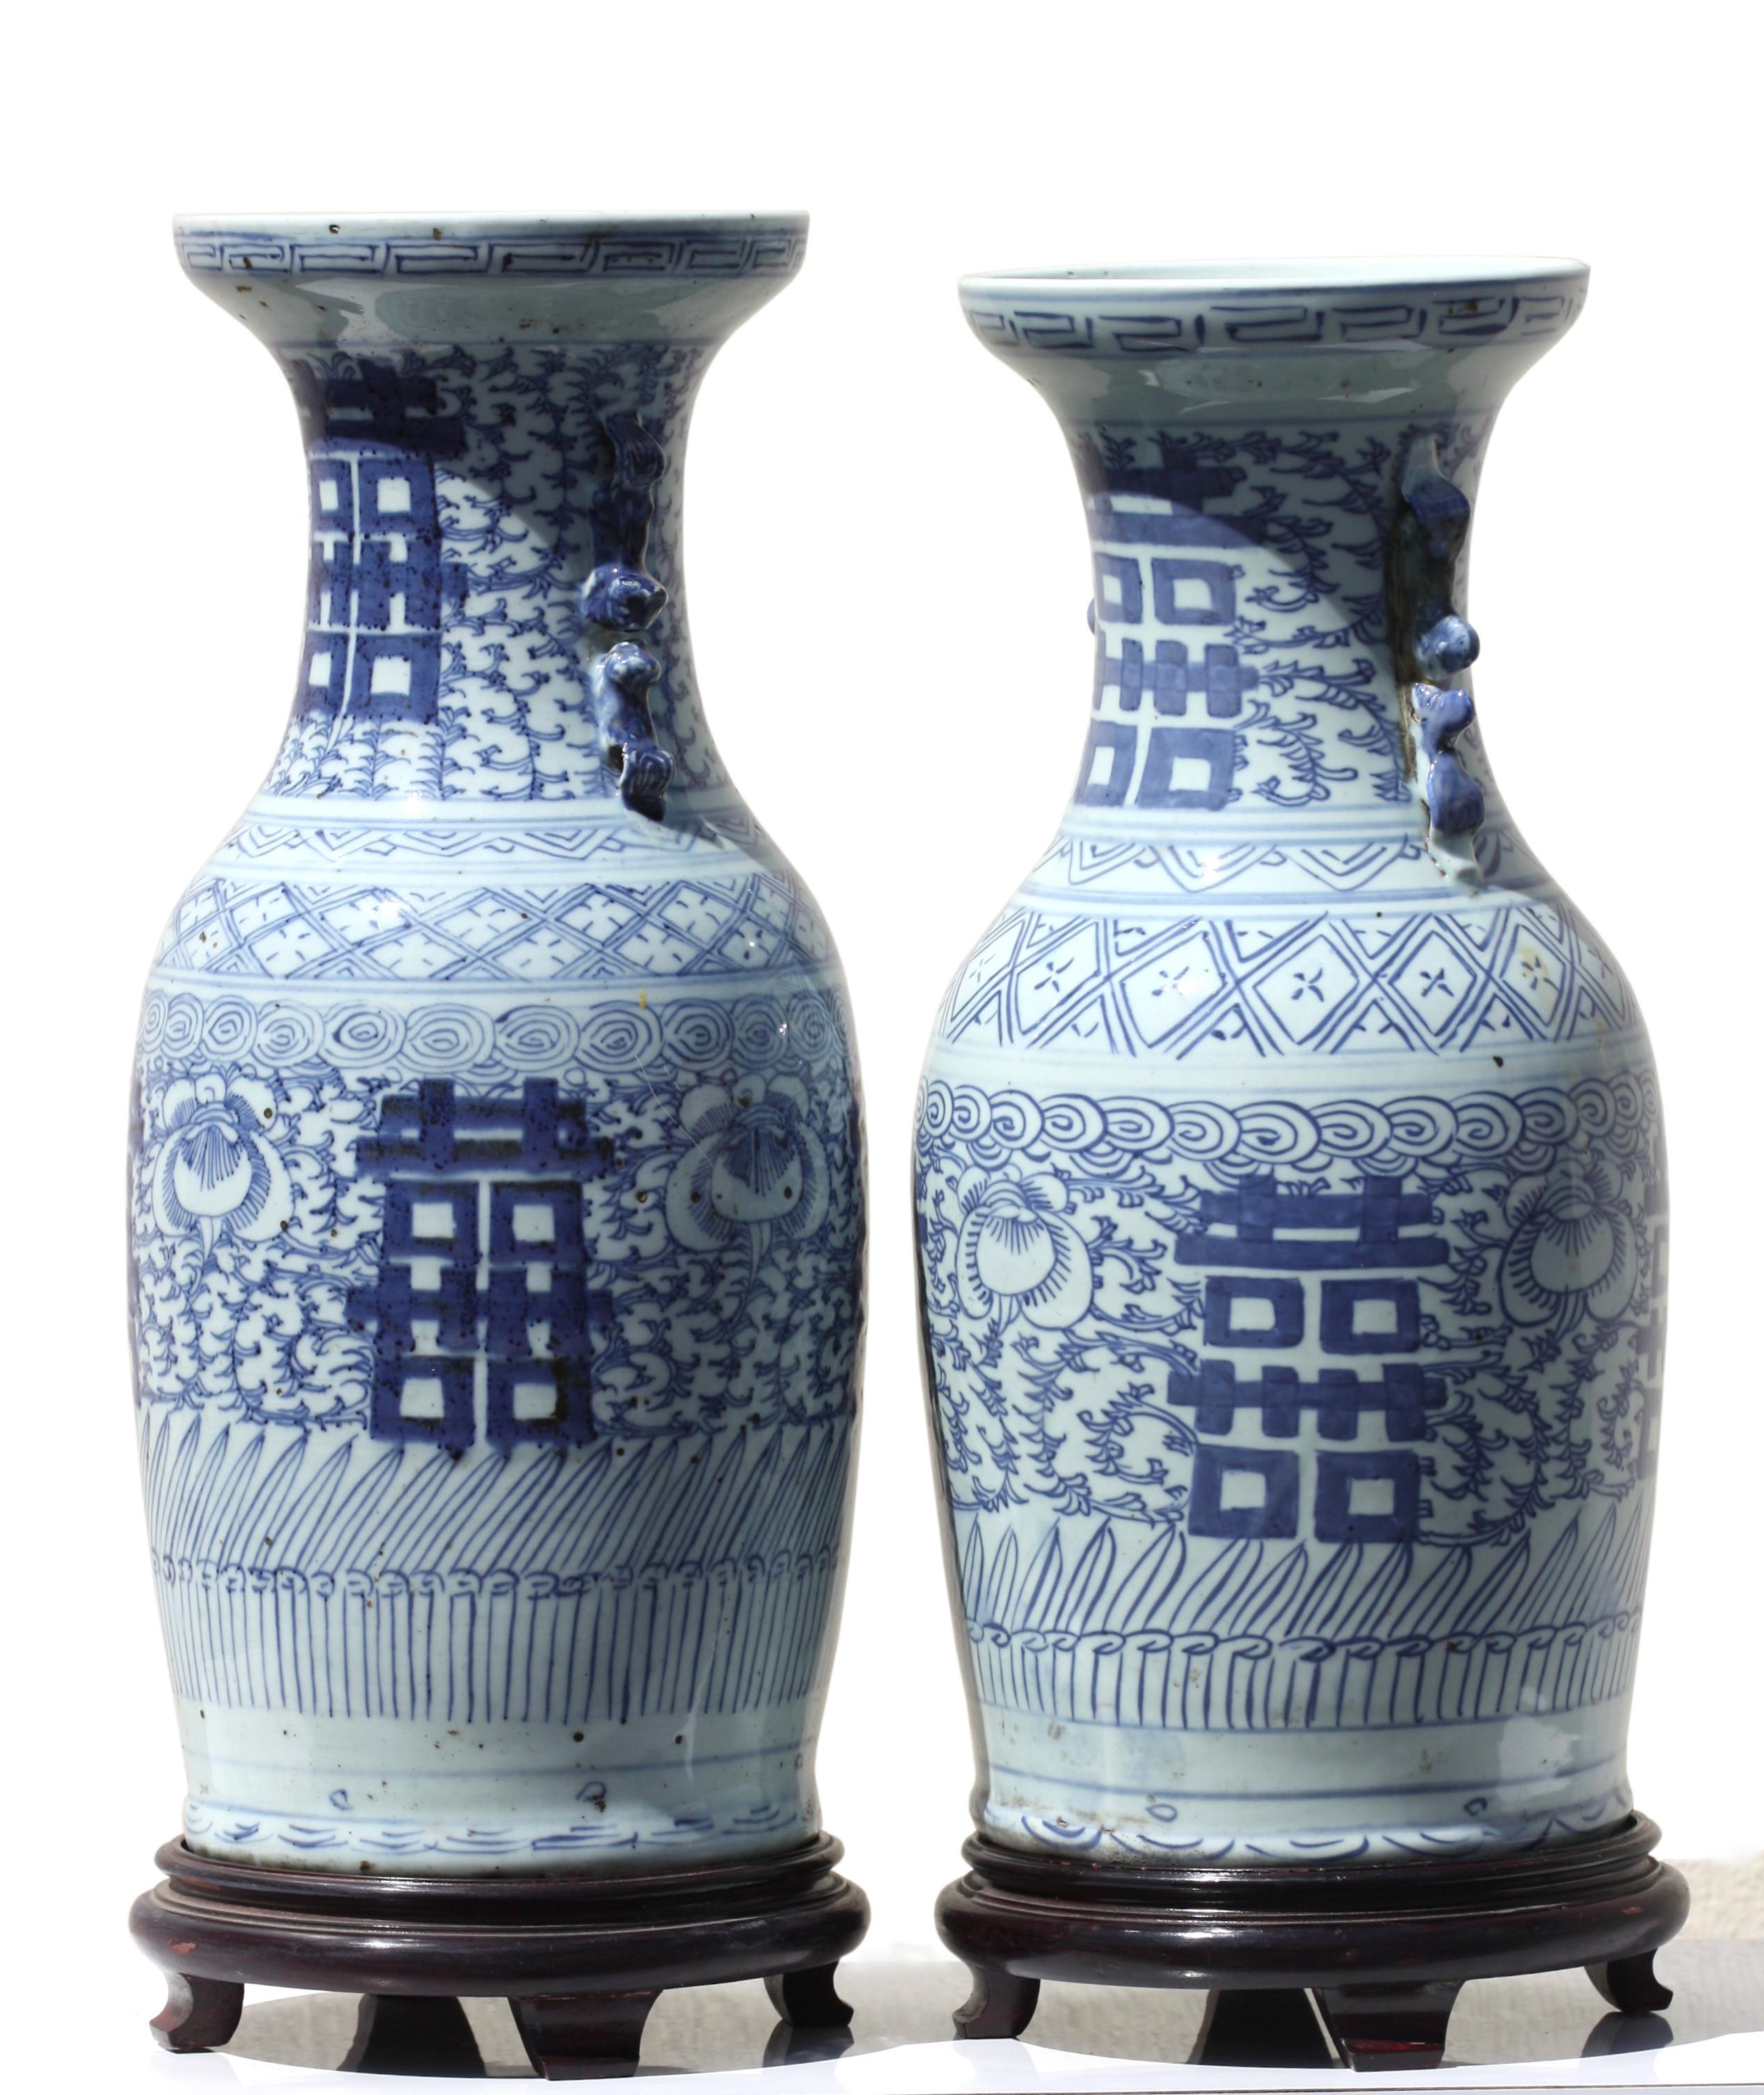 Deux vases chinois en porcelaine bleue et blanche
Dynastie Qing, 18e-19e siècle
décorées de gerbes de fleurs, hauteur 69,21 cm et 41,91 cm. 
Diamètre 8 po (20,32 cm).
 